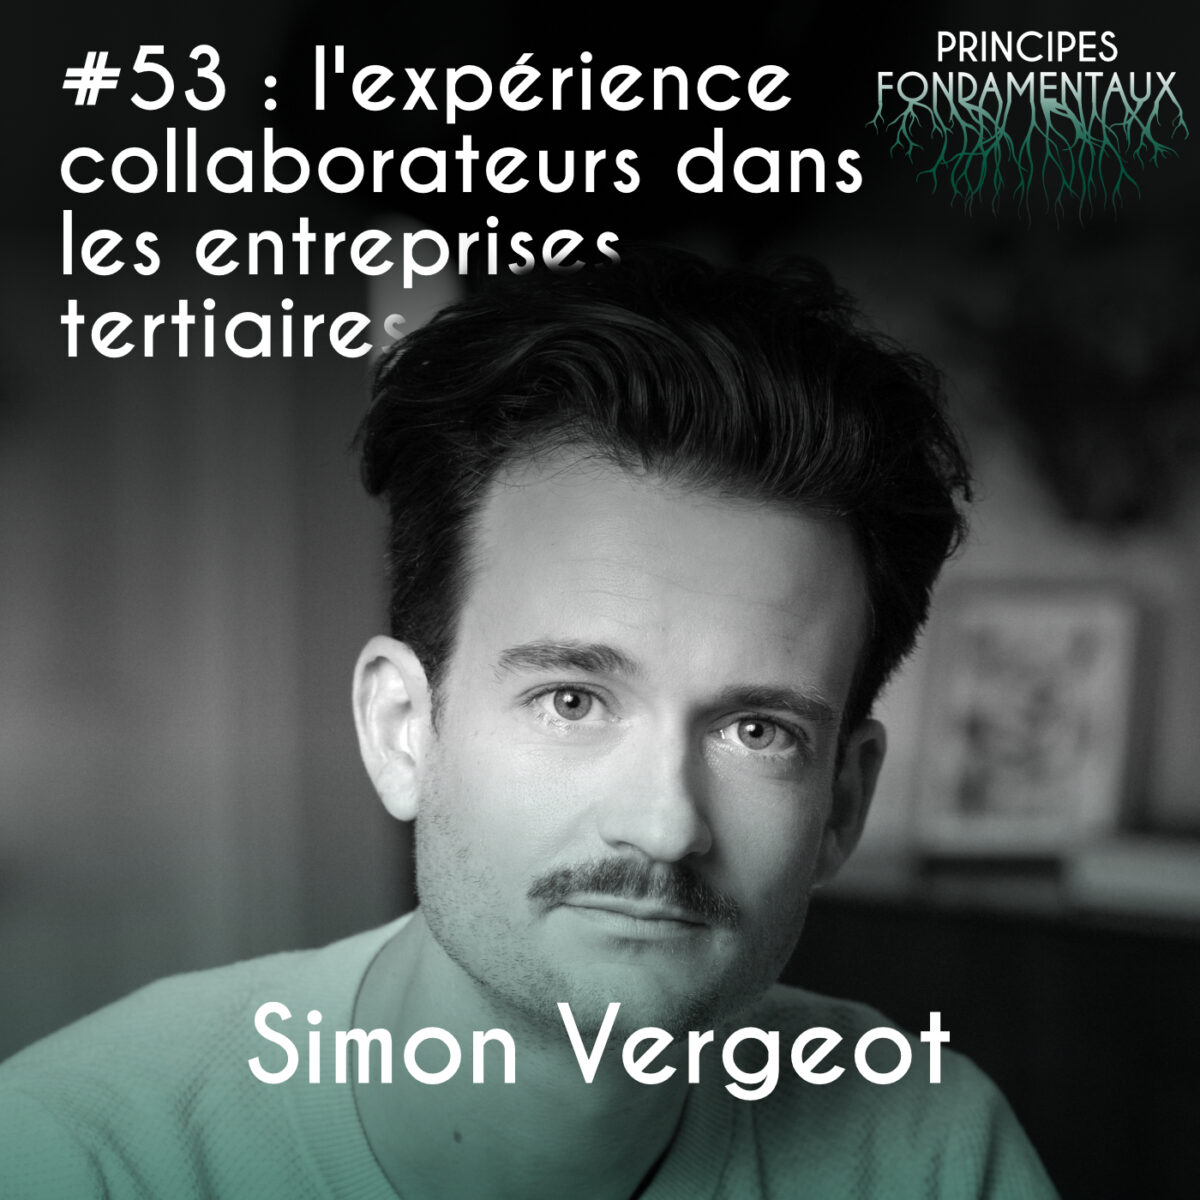 Podcast #53 : Simon Vergeot - l'expérience collaborateur dans les entreprises tertiaires